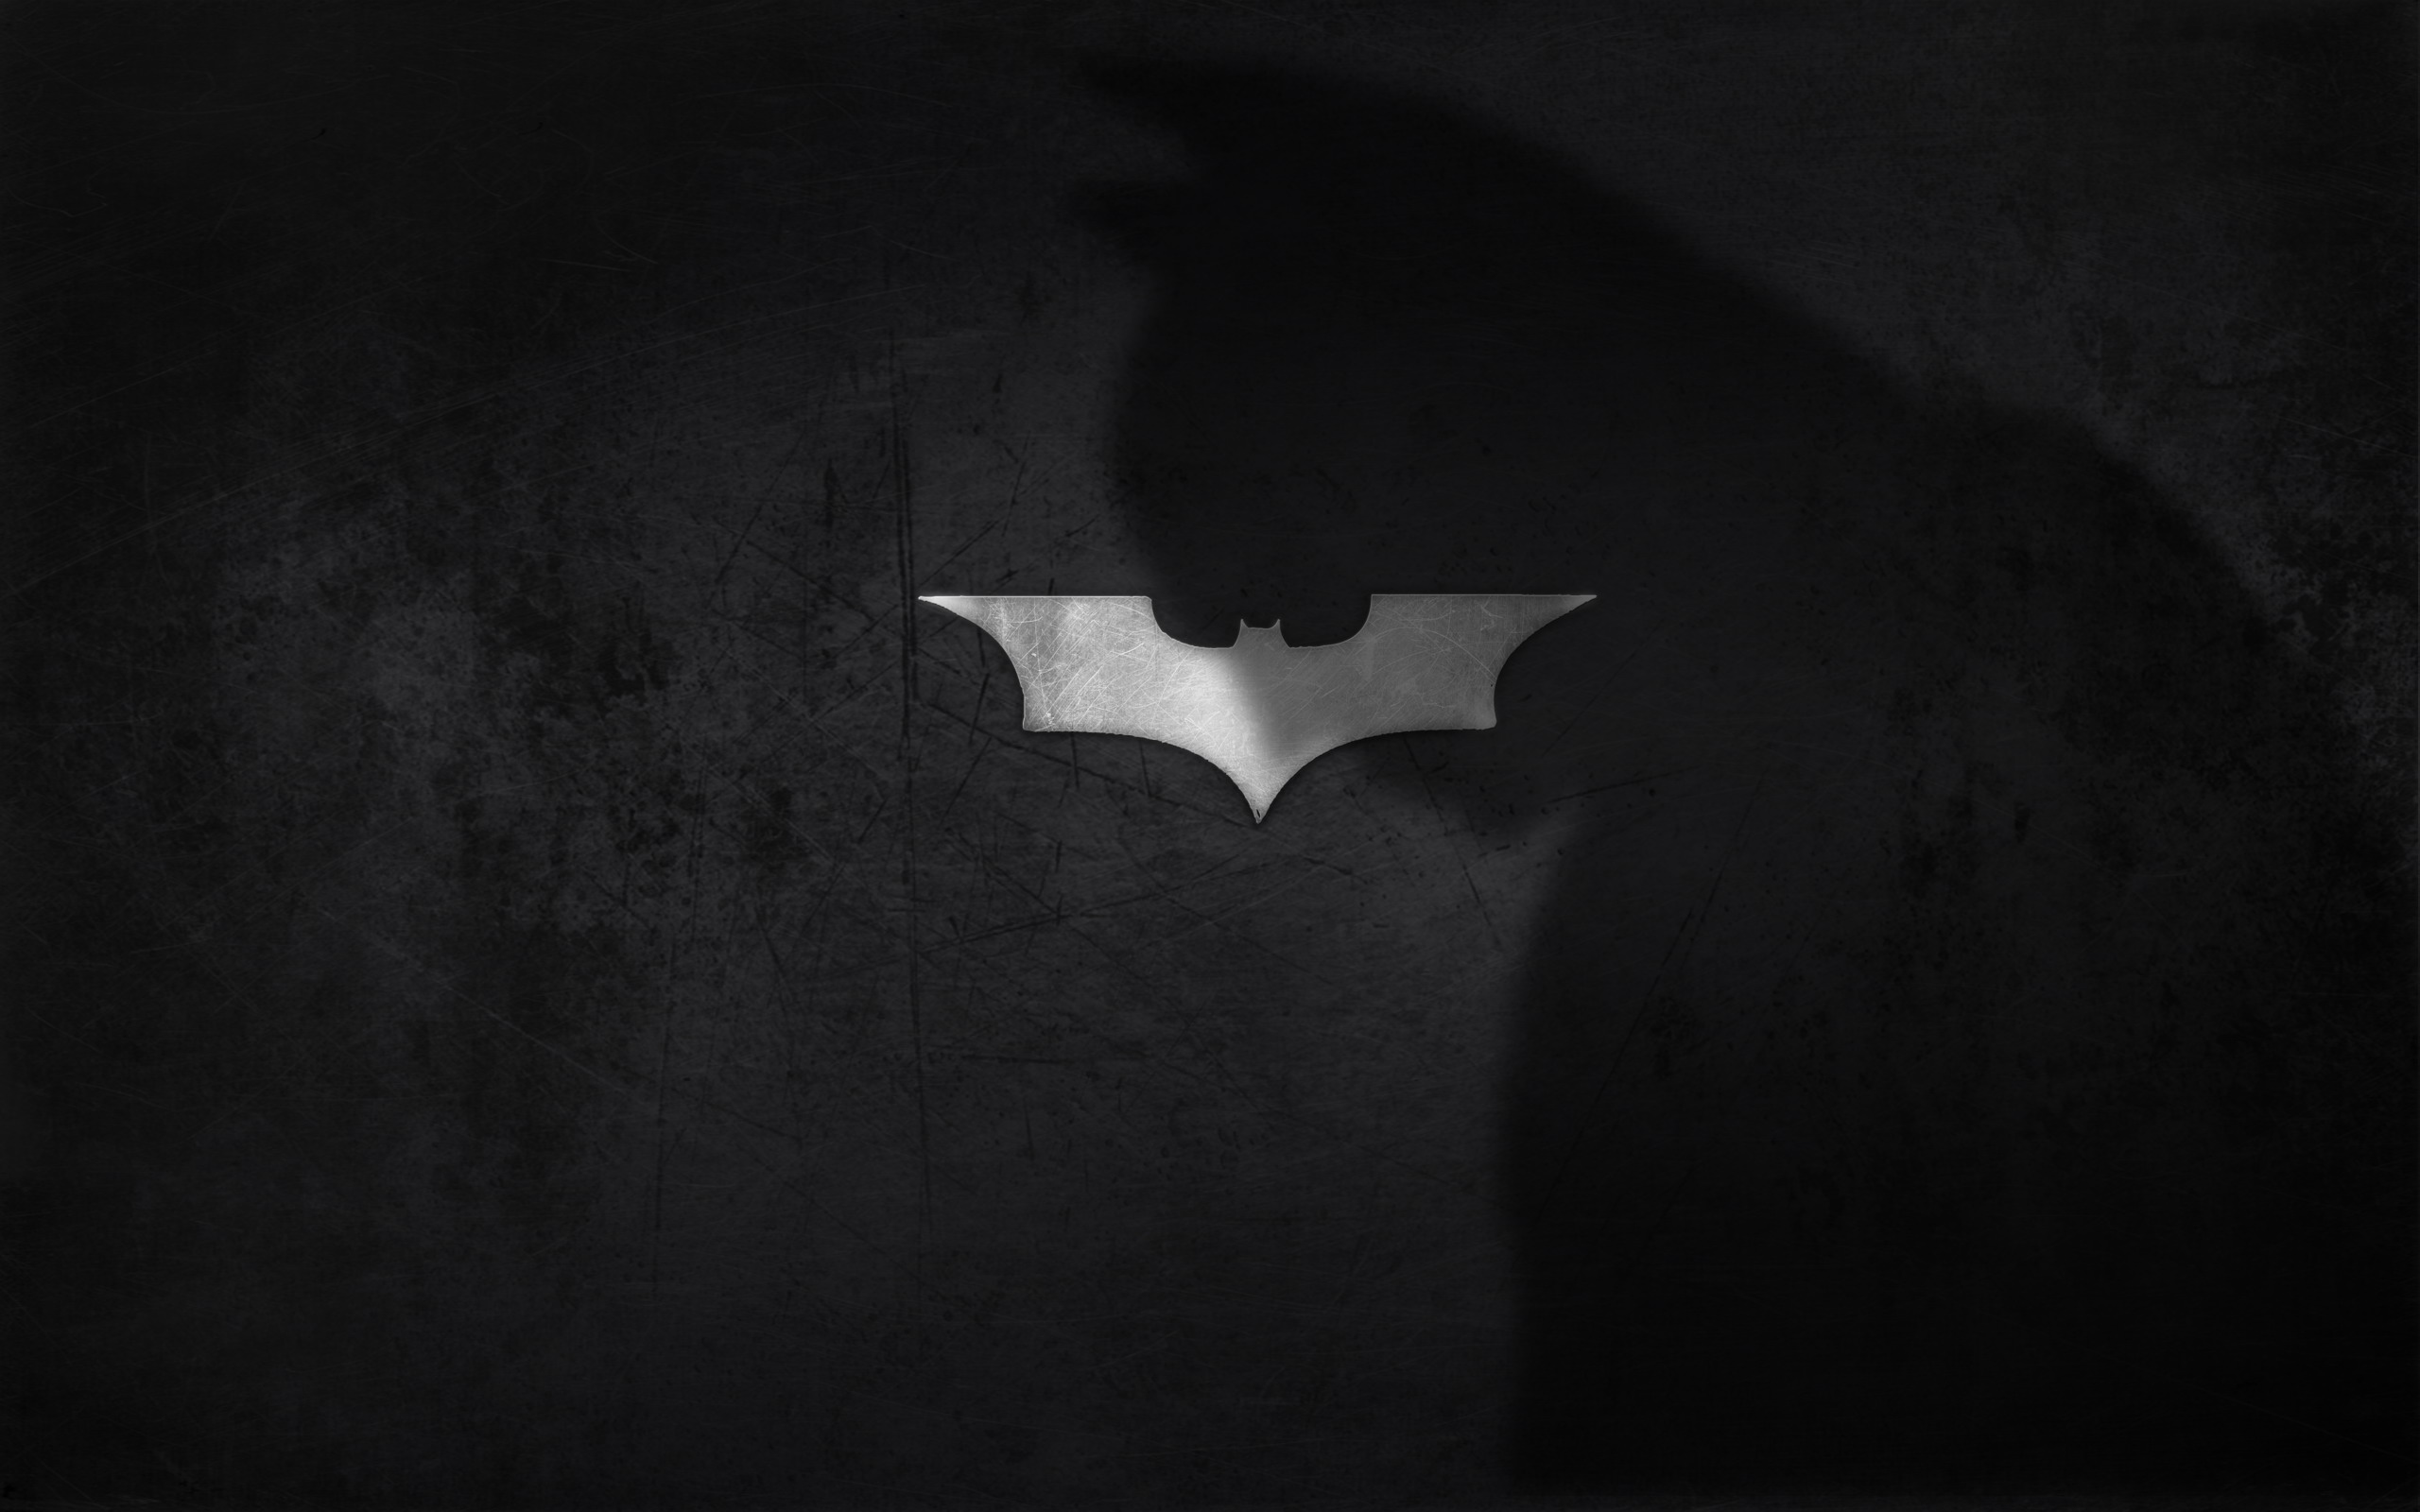 壁纸2560x1600蝙蝠侠 宽屏 桌酷精选一图 壁纸10壁纸 蝙蝠侠（宽屏）精壁纸 蝙蝠侠（宽屏）精图片 蝙蝠侠（宽屏）精素材 精选壁纸 精选图库 精选图片素材桌面壁纸